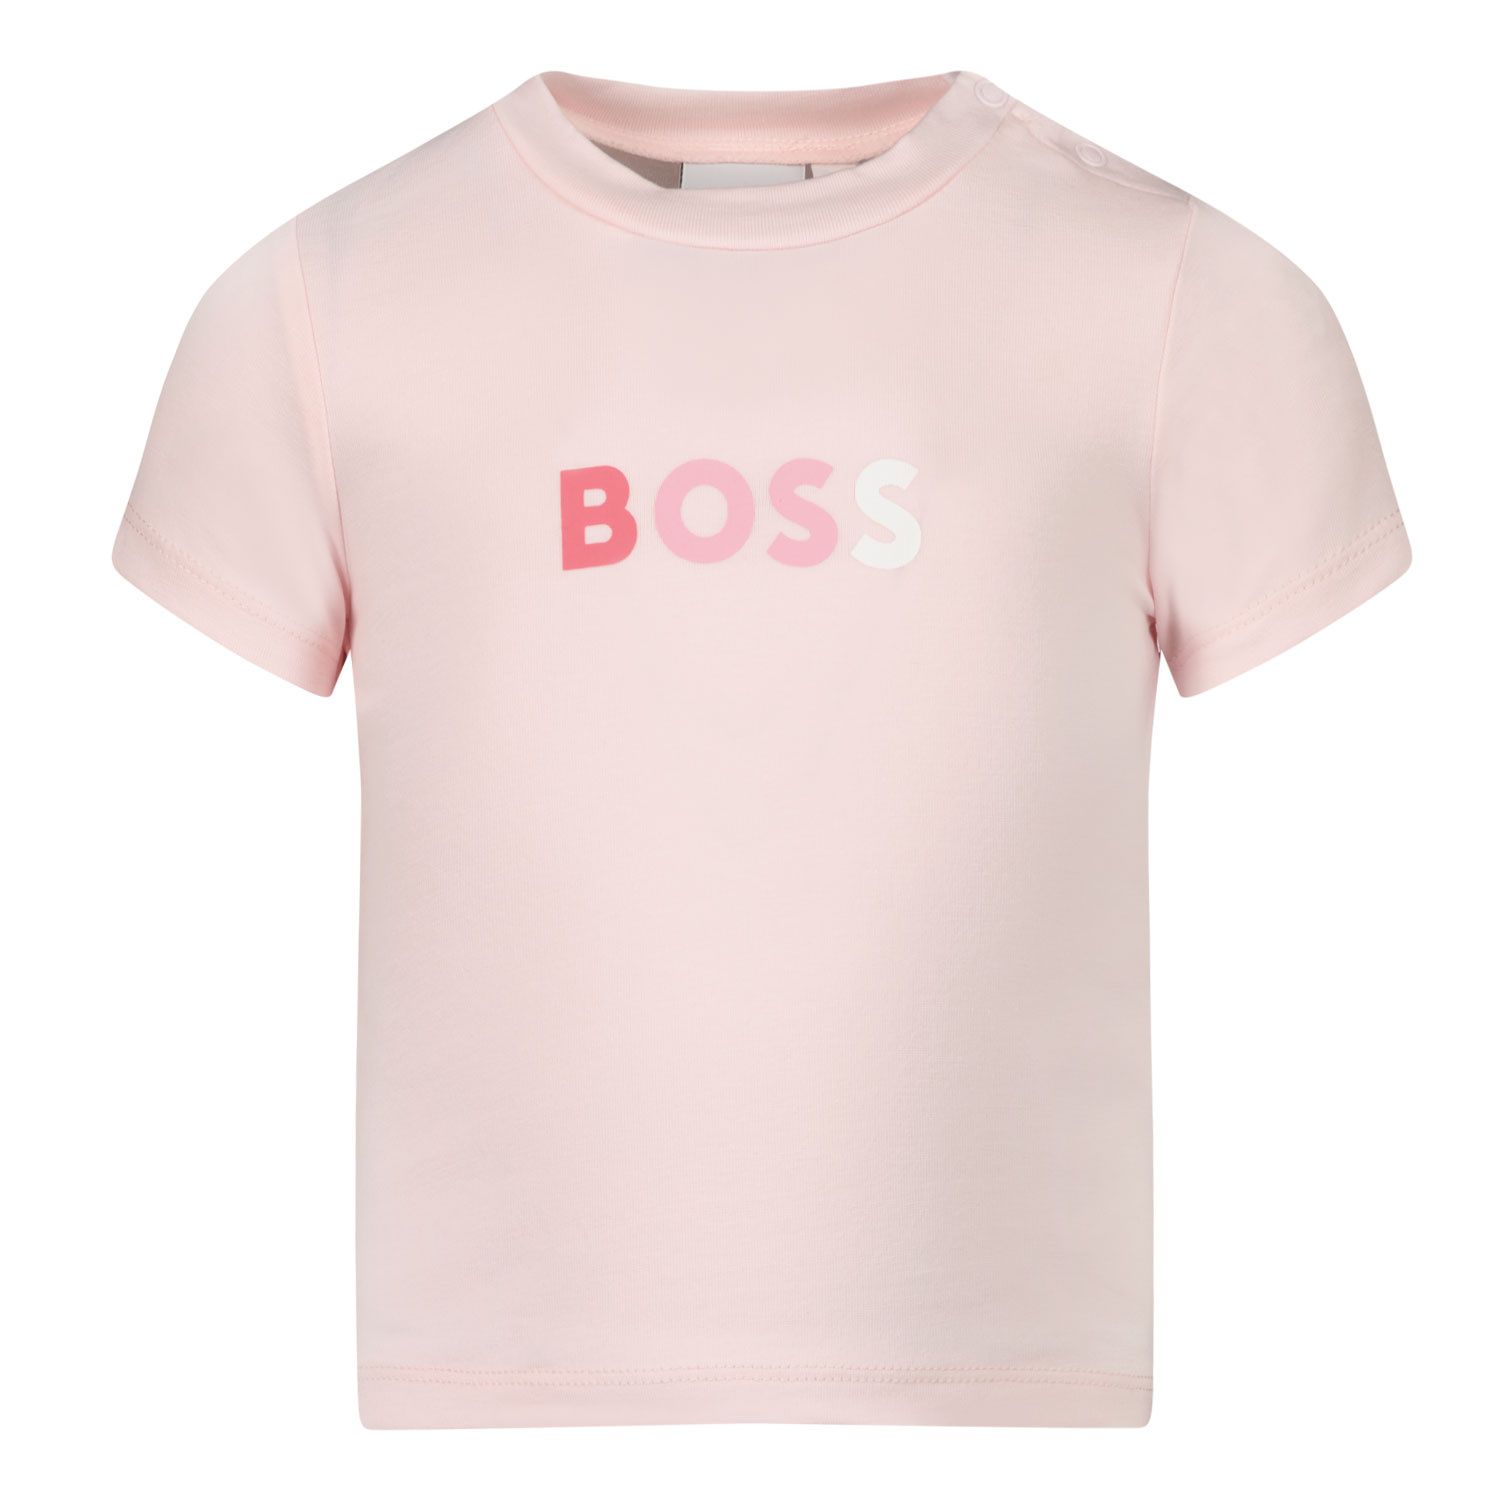 Afbeelding van Boss J95334 baby t-shirt licht roze